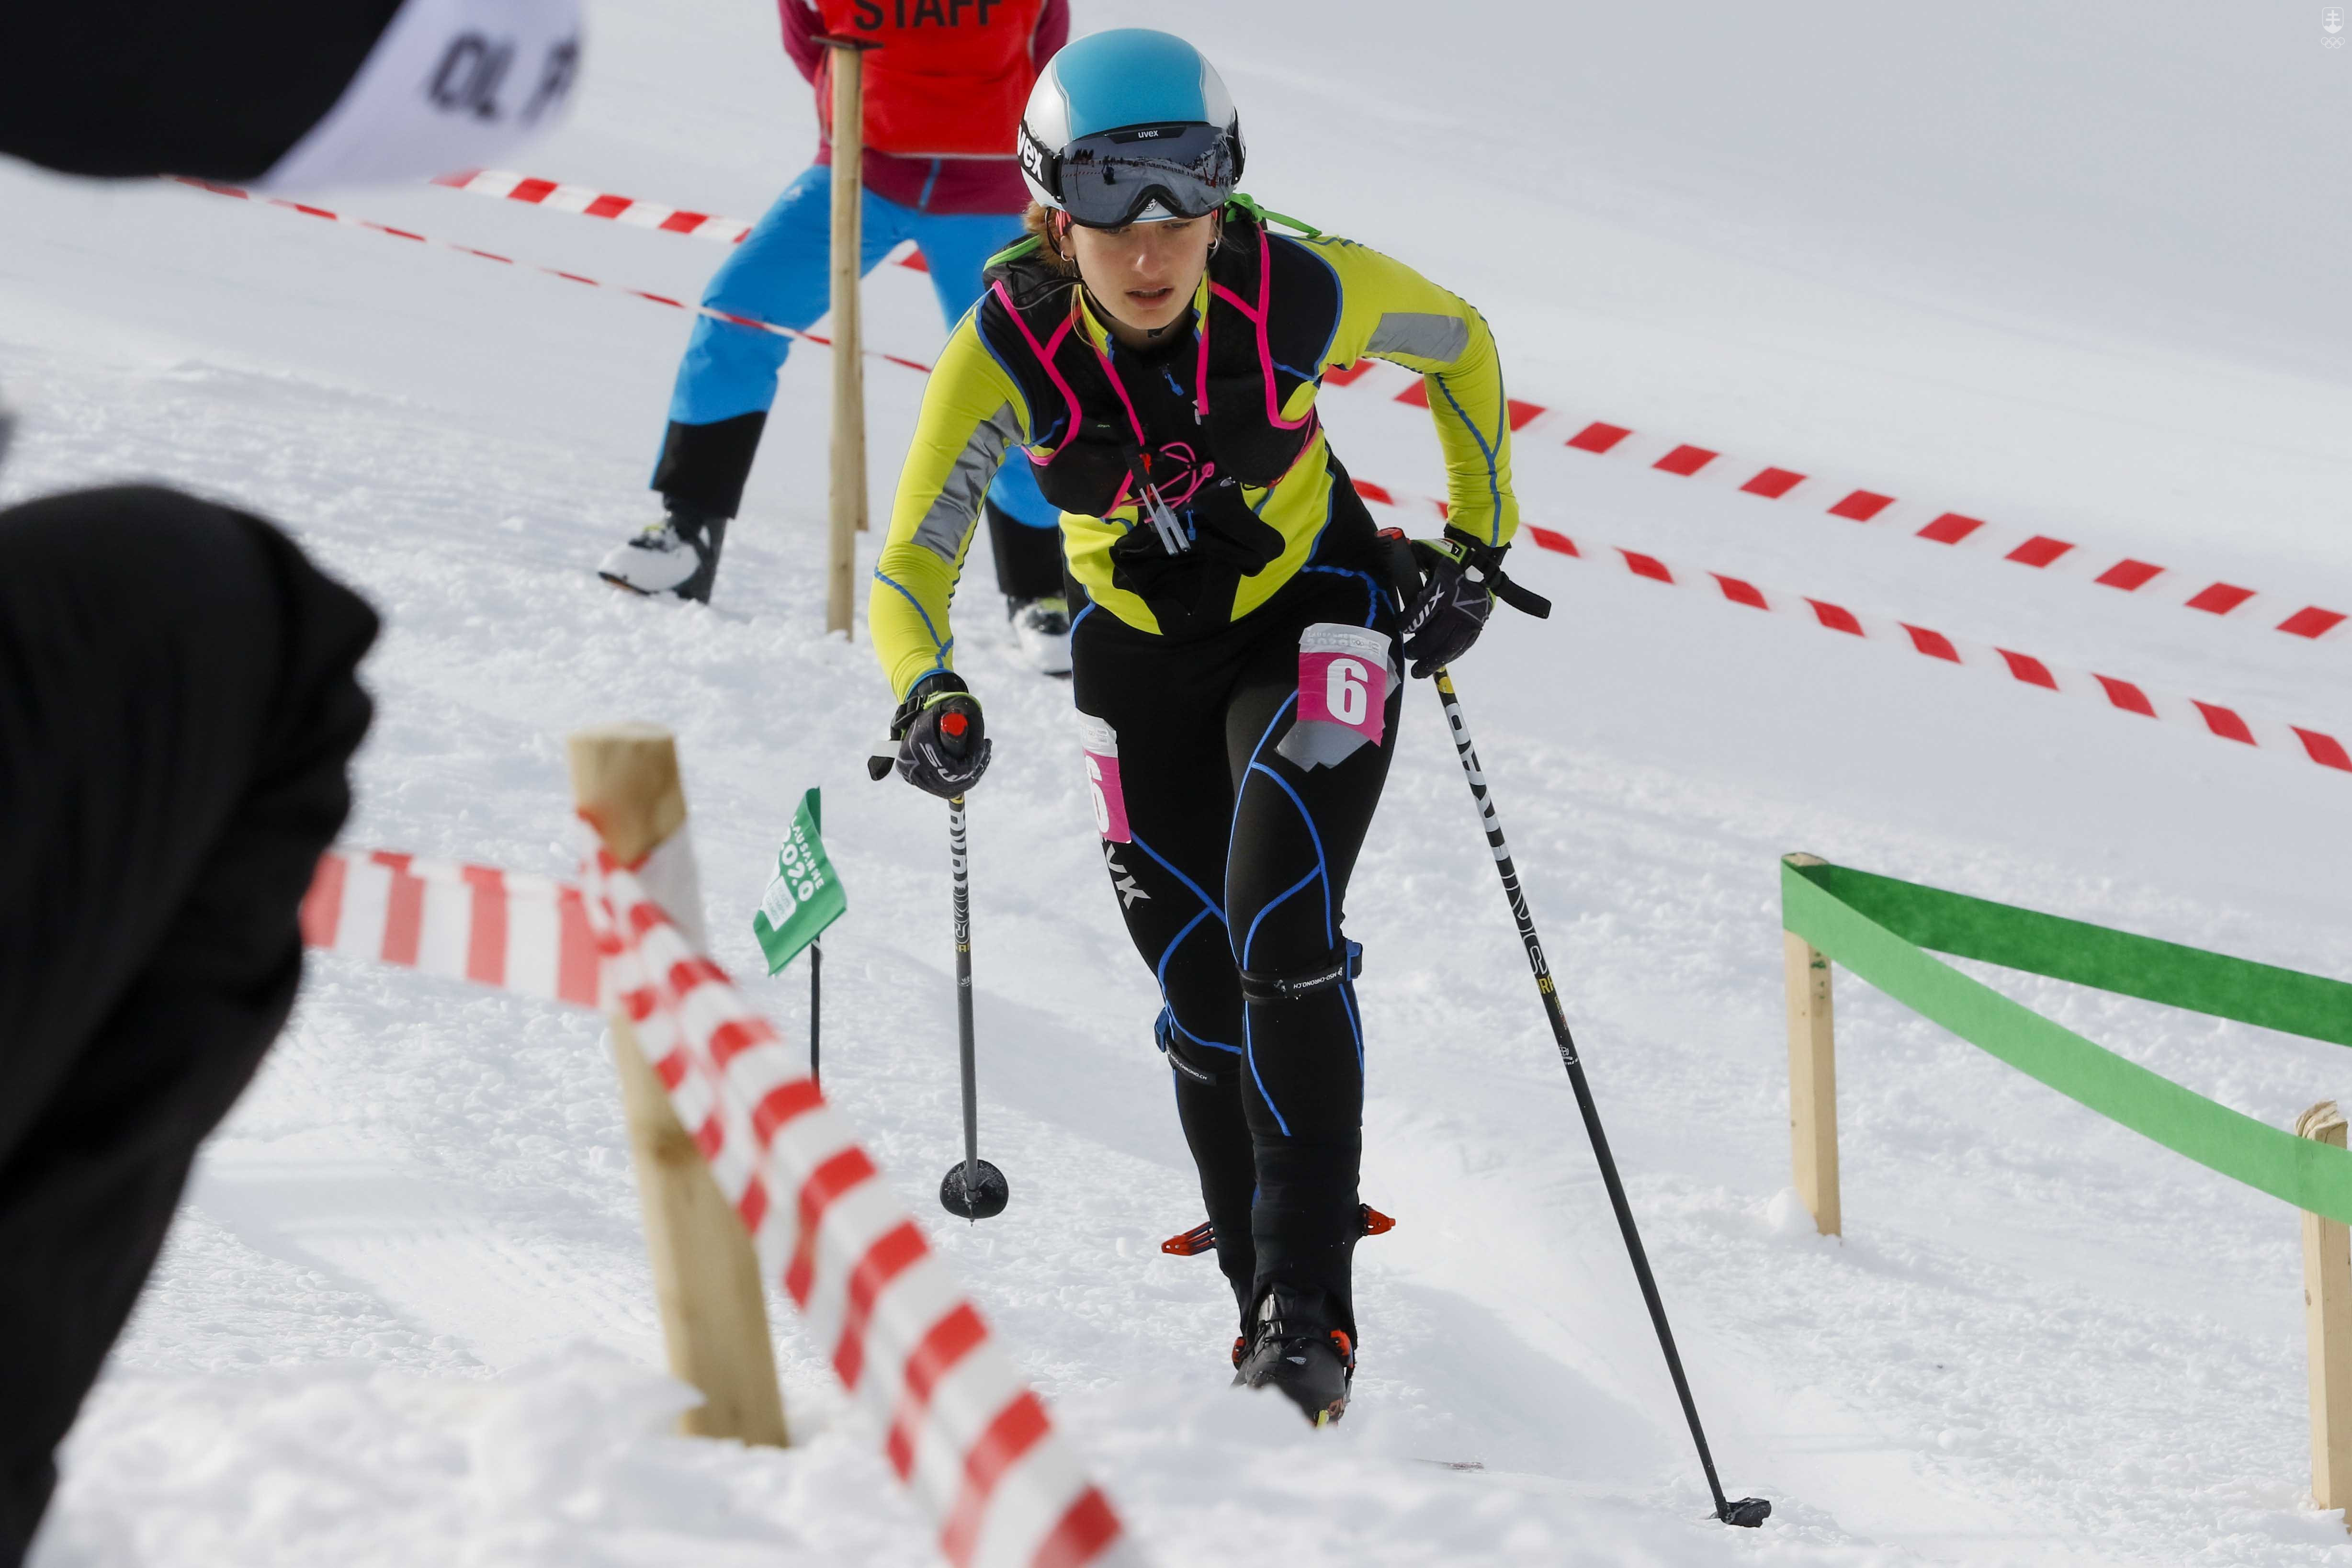 Laura Kovárová v dnešnom šprinte obsadila 19. priečku.